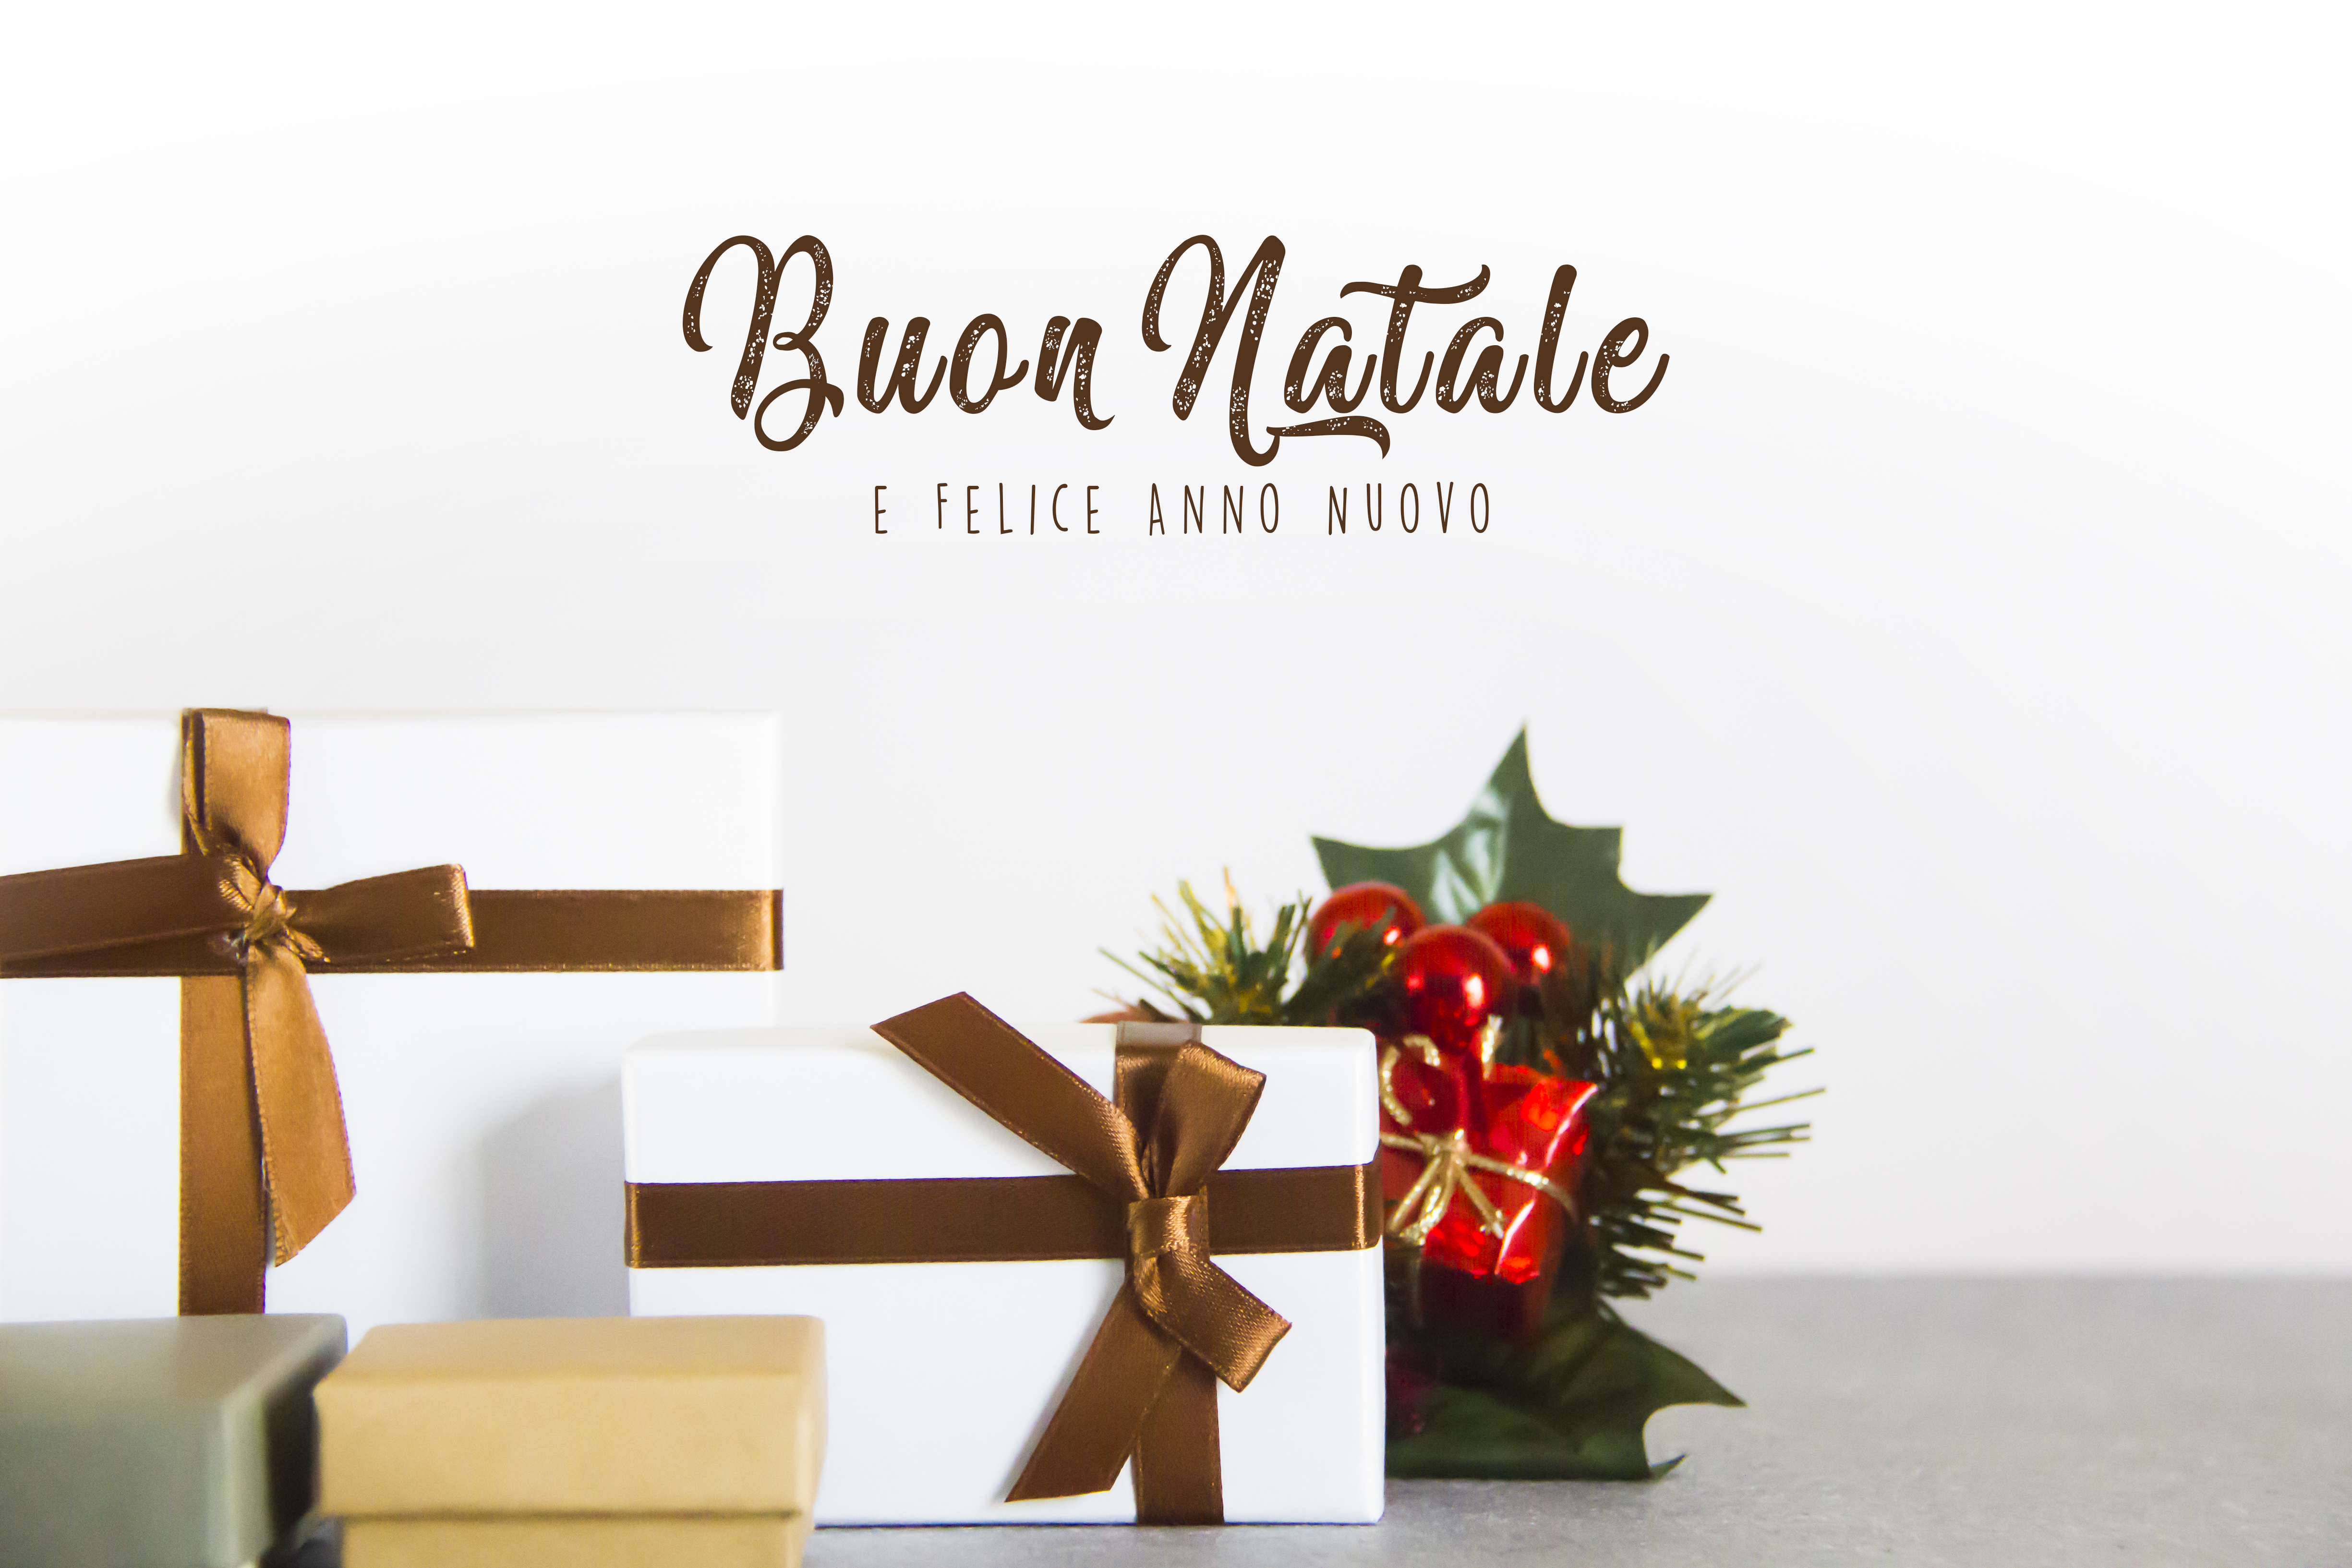 Buon Natale from the Calgary Italian Bakery Famiglia